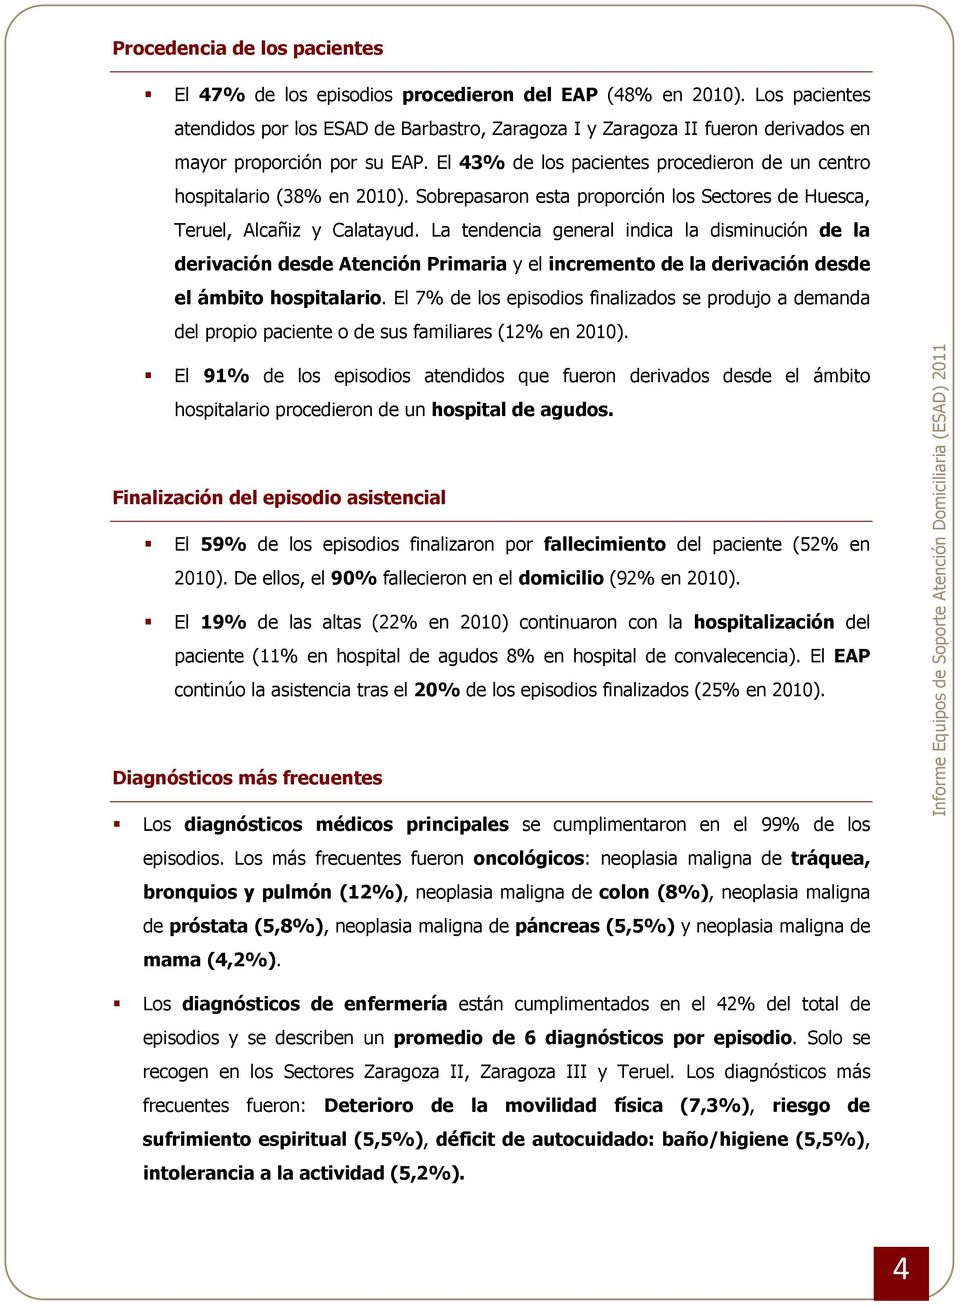 El 43% de los pacientes procedieron de un centro hospitalario (38% en 2010). Sobrepasaron esta proporción los Sectores de Huesca, Teruel, Alcañiz y Calatayud.